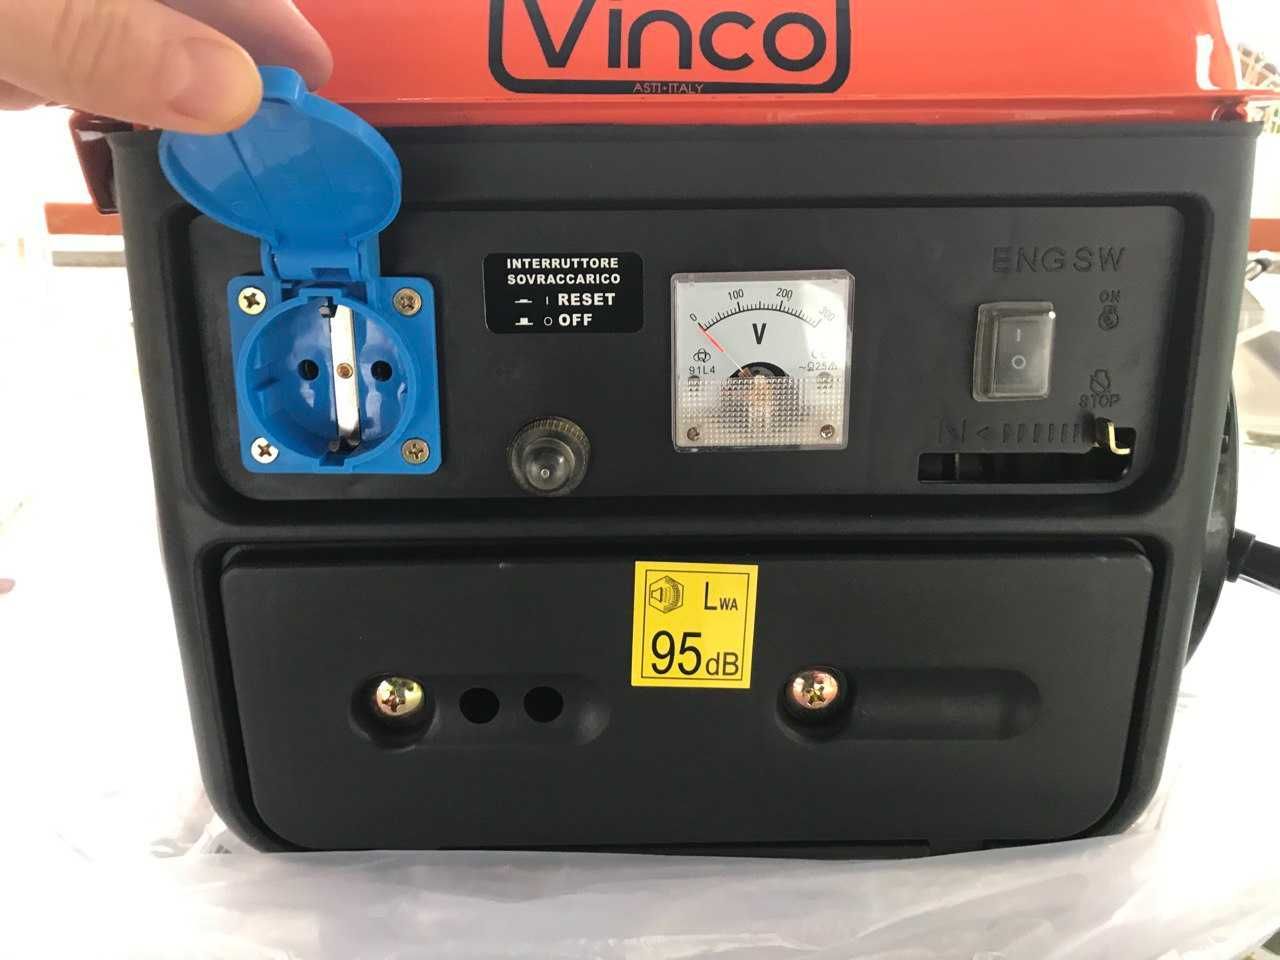 Генератор бензиновий VINCO ( Italia) 0.8 Kw новий в упаковці